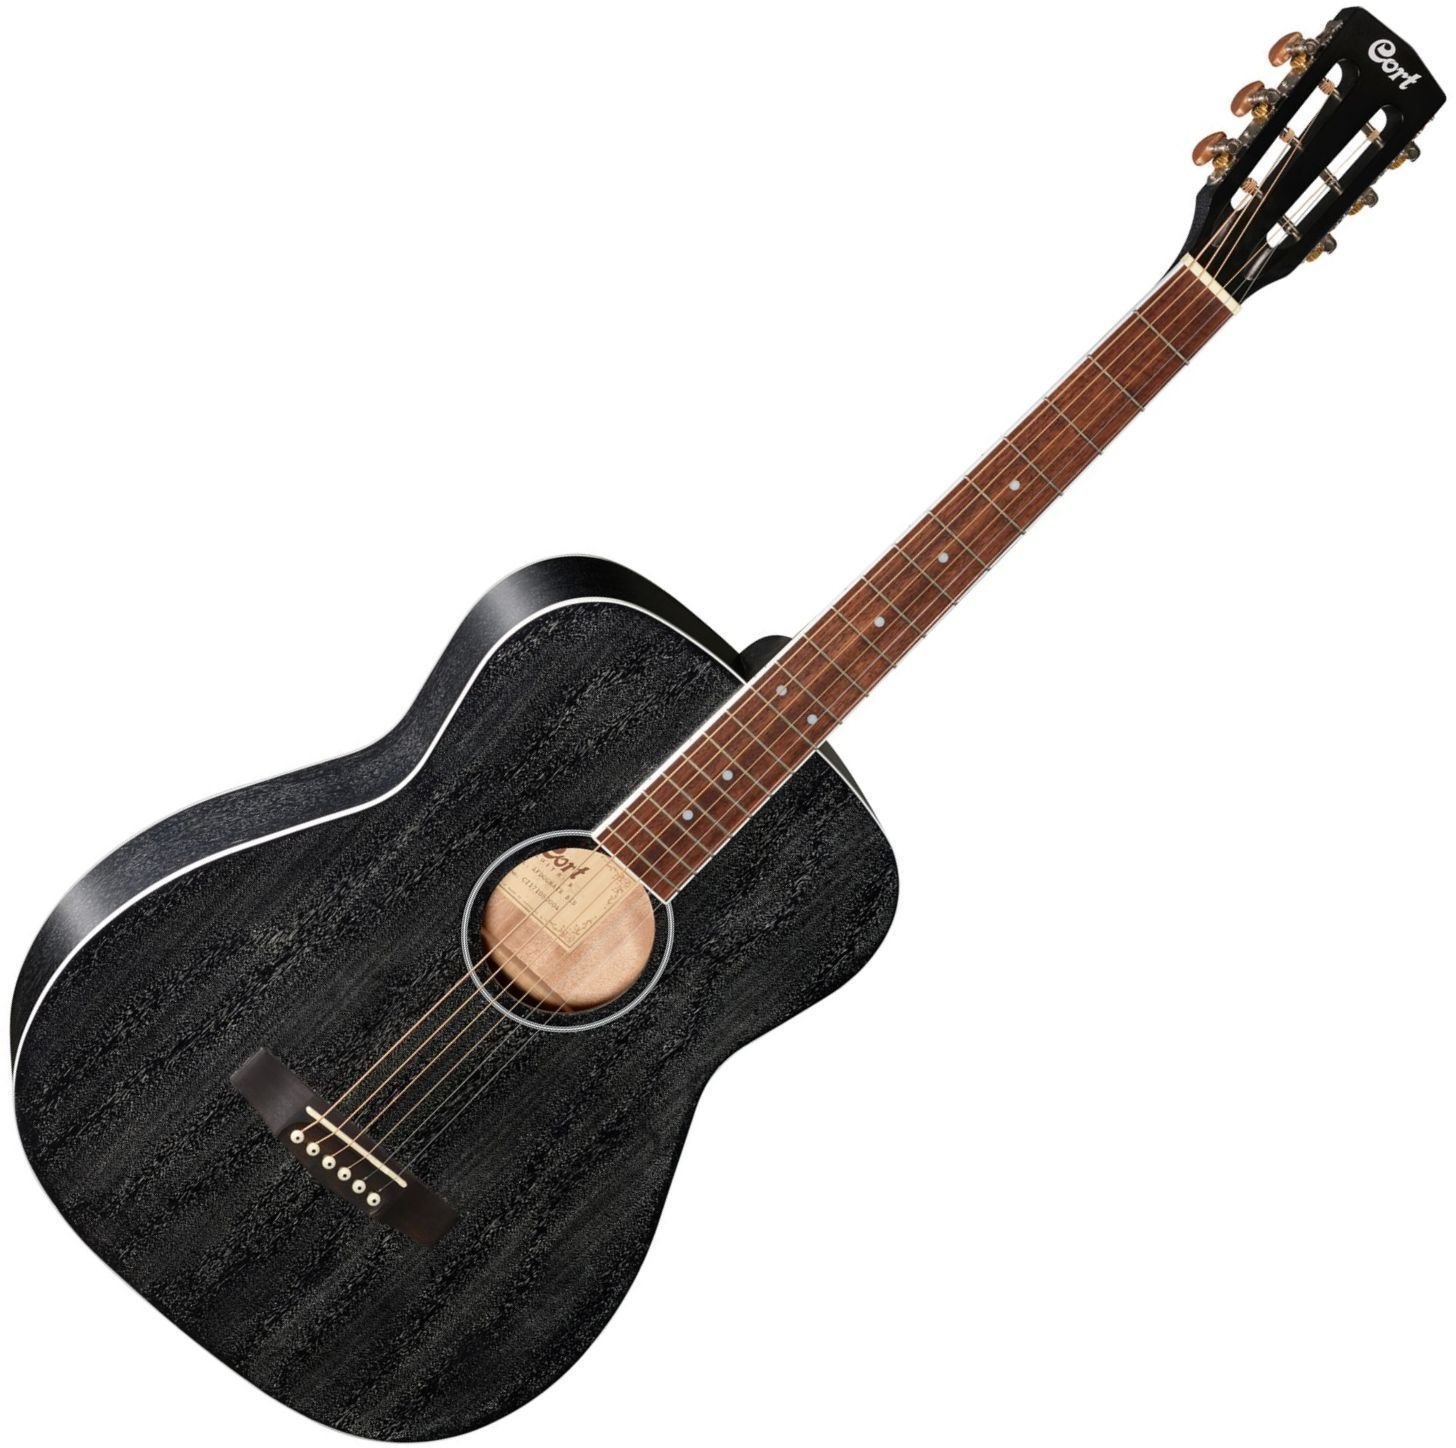 Jumbo elektro-akoestische gitaar Cort AF-590MFB-OP Black Open Pore